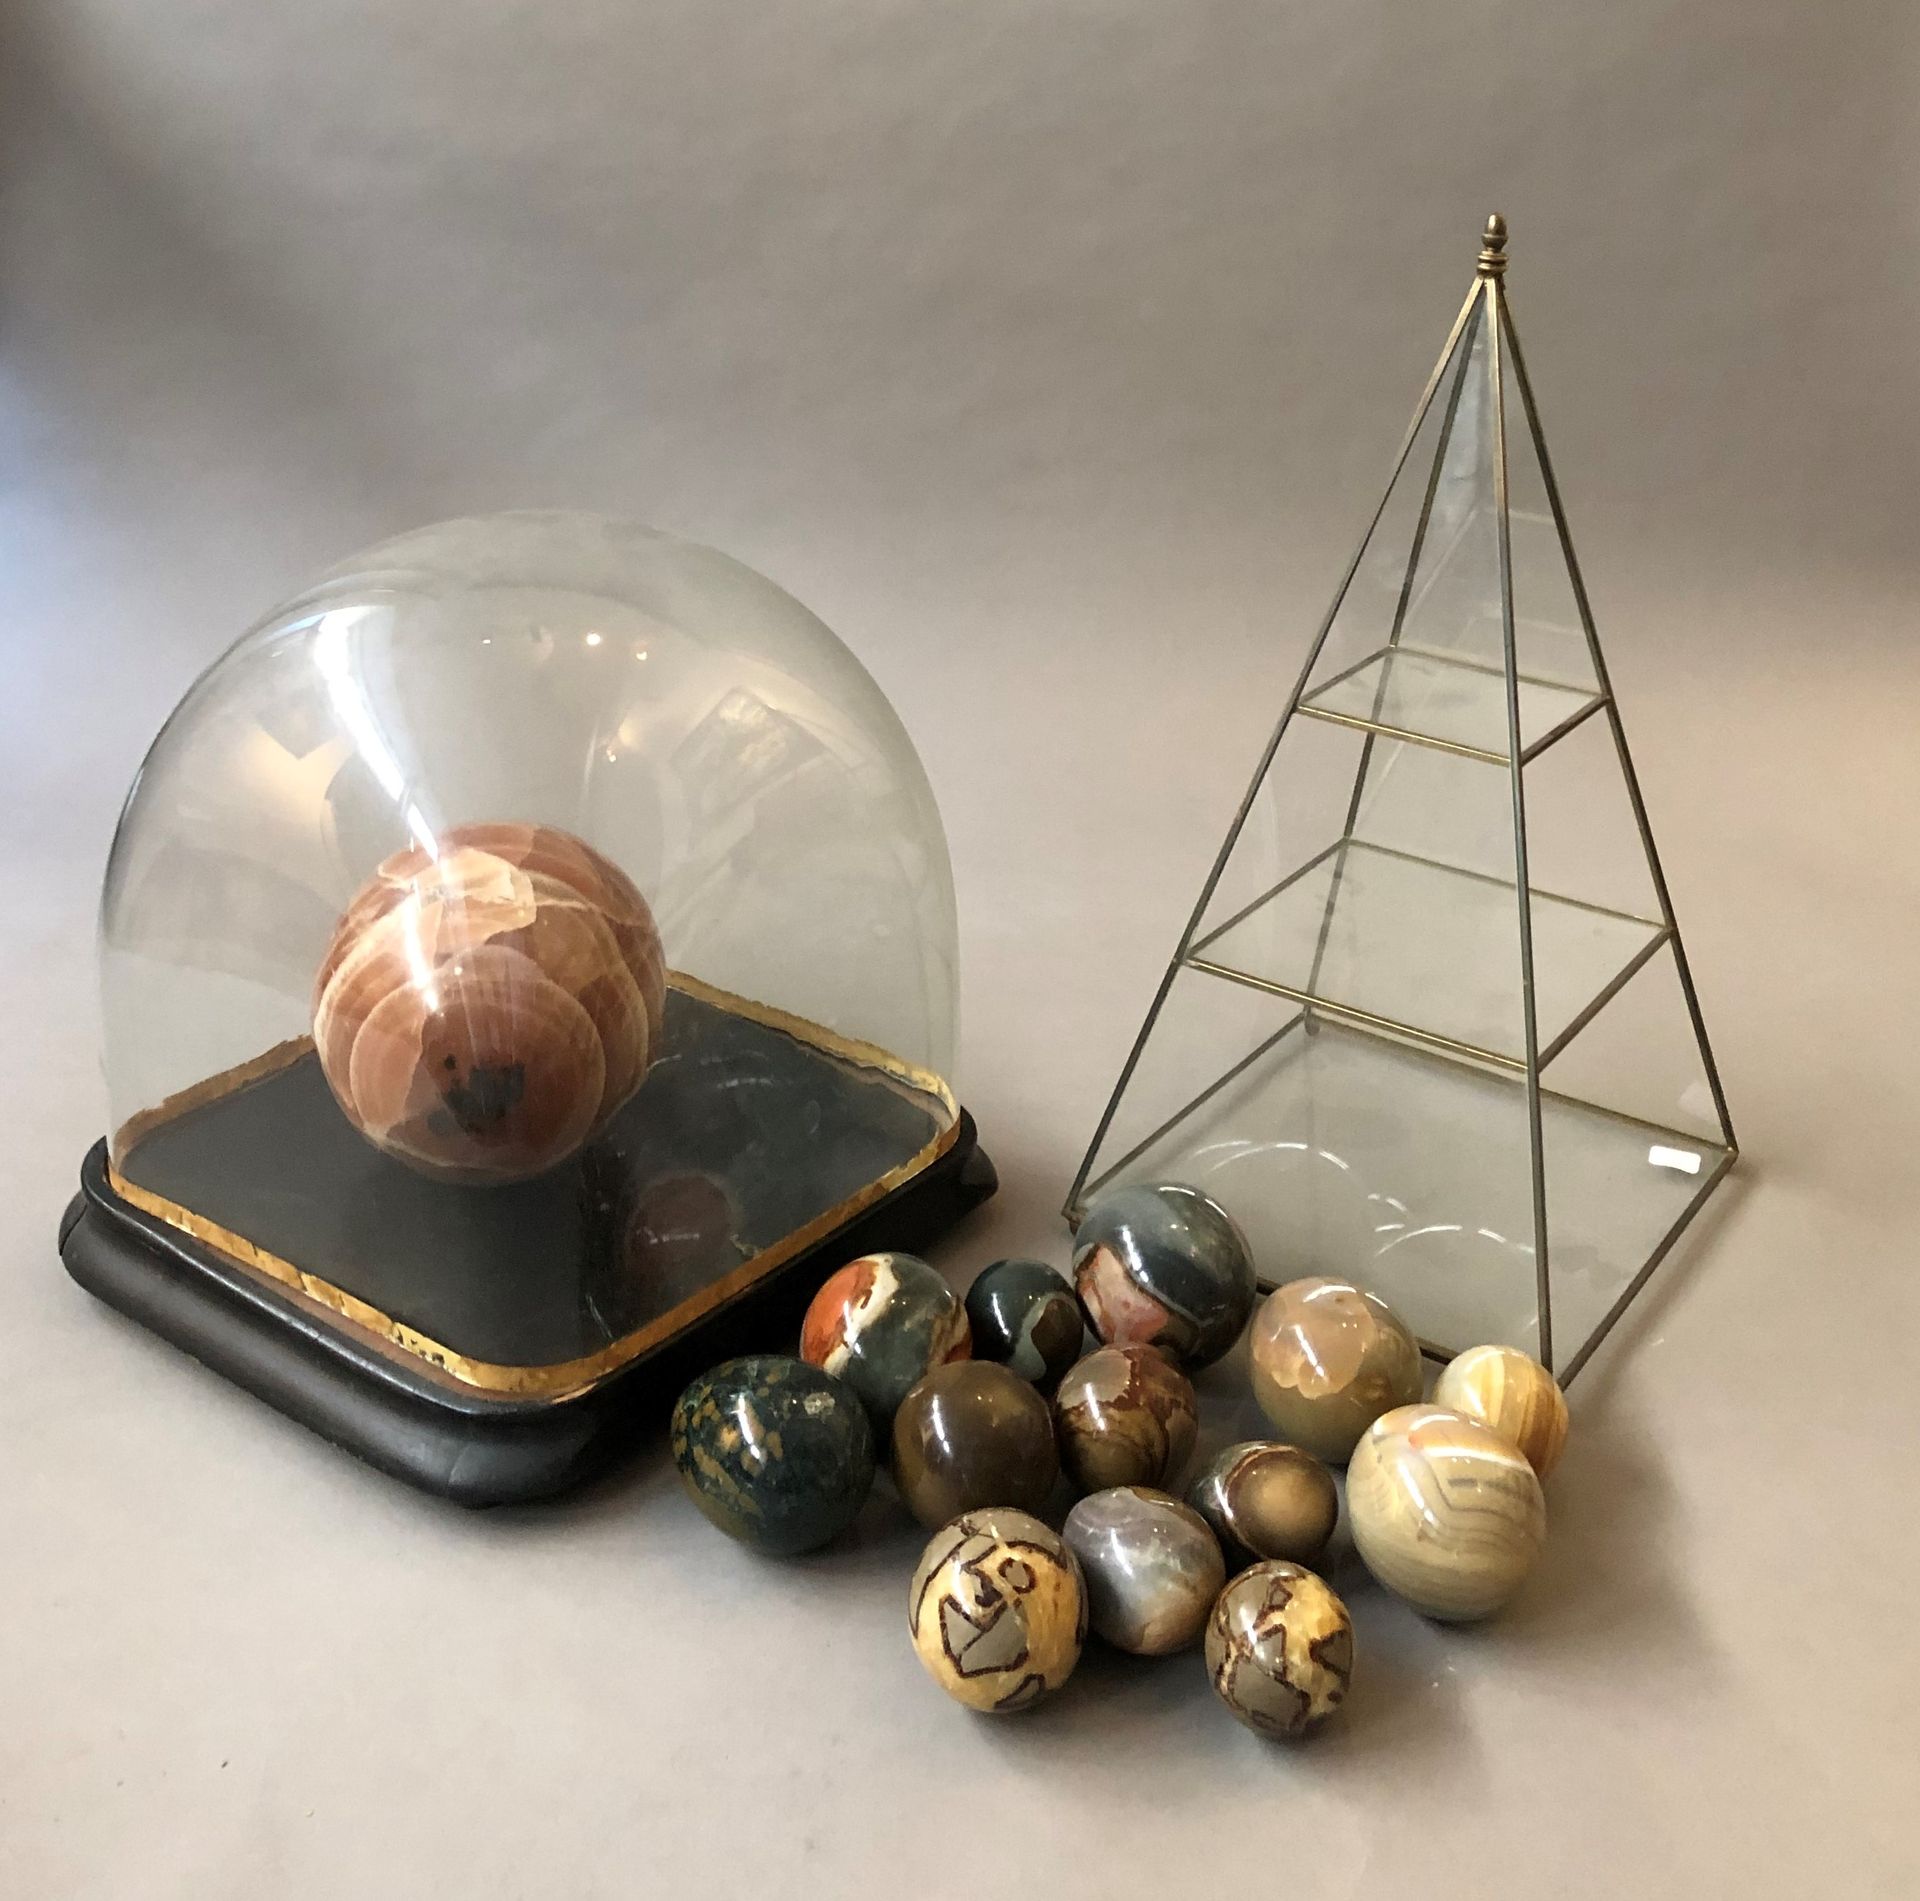 Null 地段包括 :

- 安放在木质底座上的玻璃球

- 玻璃和黄铜金字塔，高：46厘米

- 14个硬石蛋